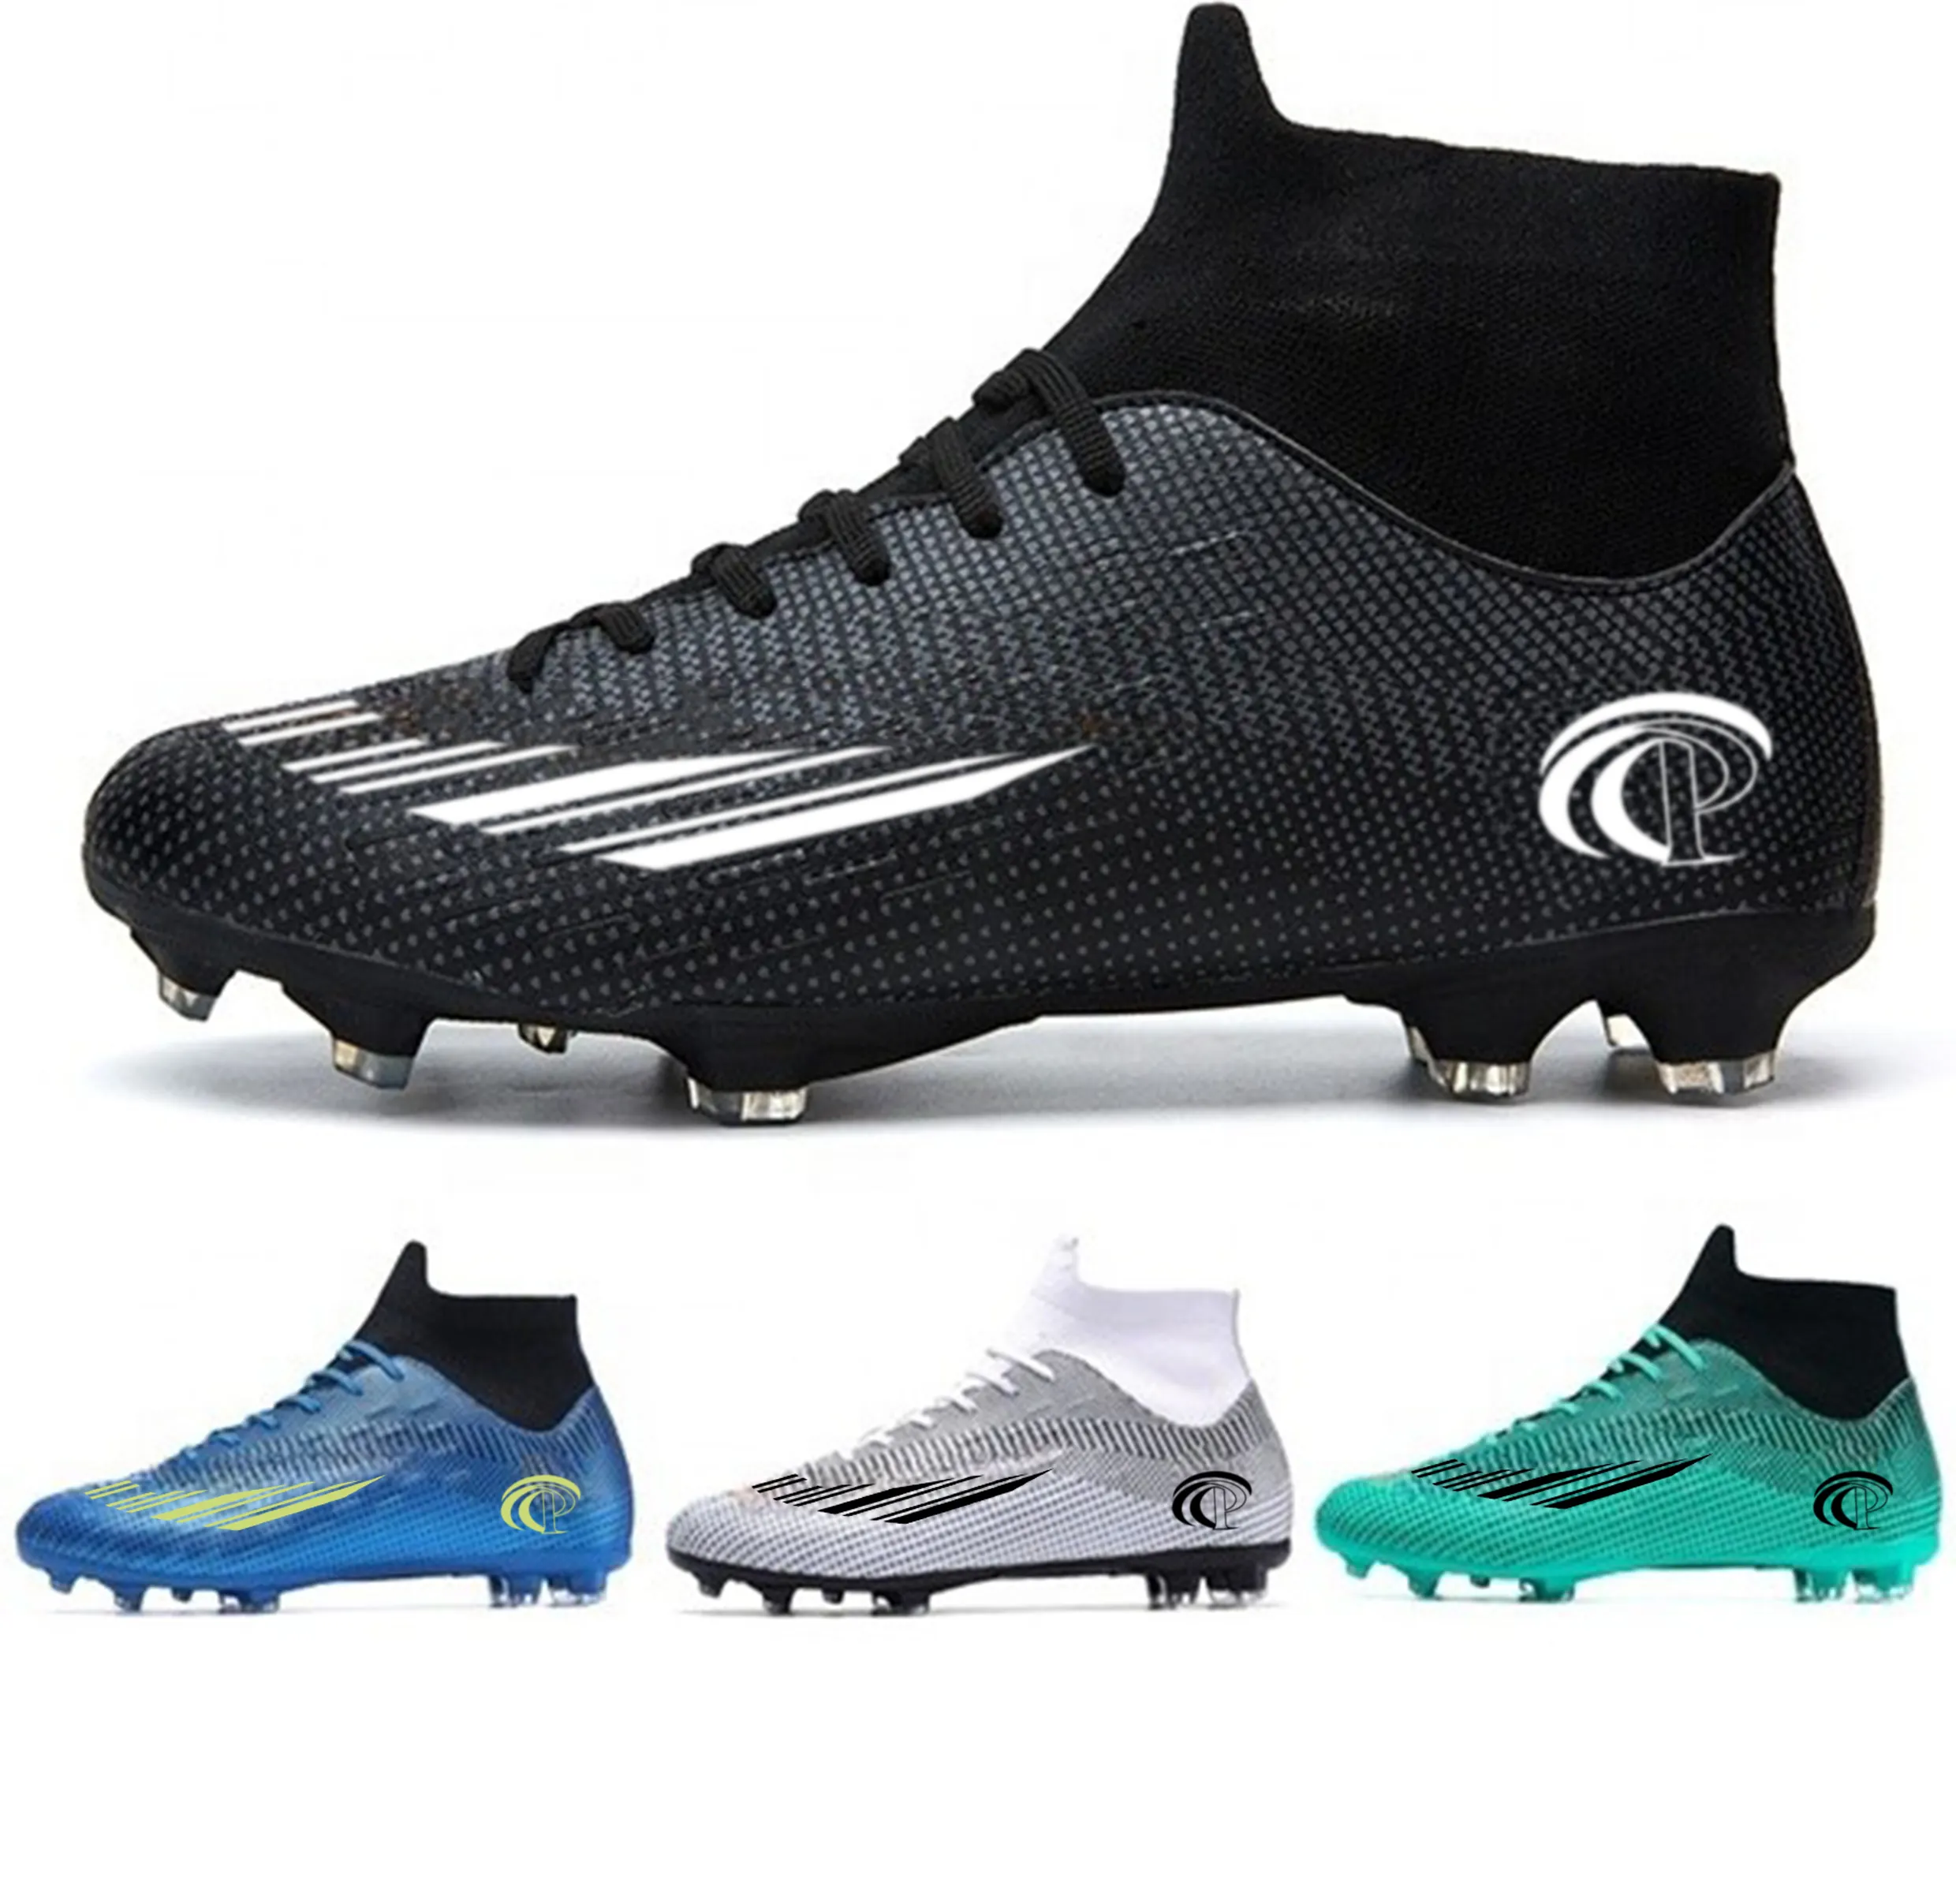 Fabbrica Professionale Personalizza Scarpe Da Calcio Sports Studs Football Boots Soccer Shoes